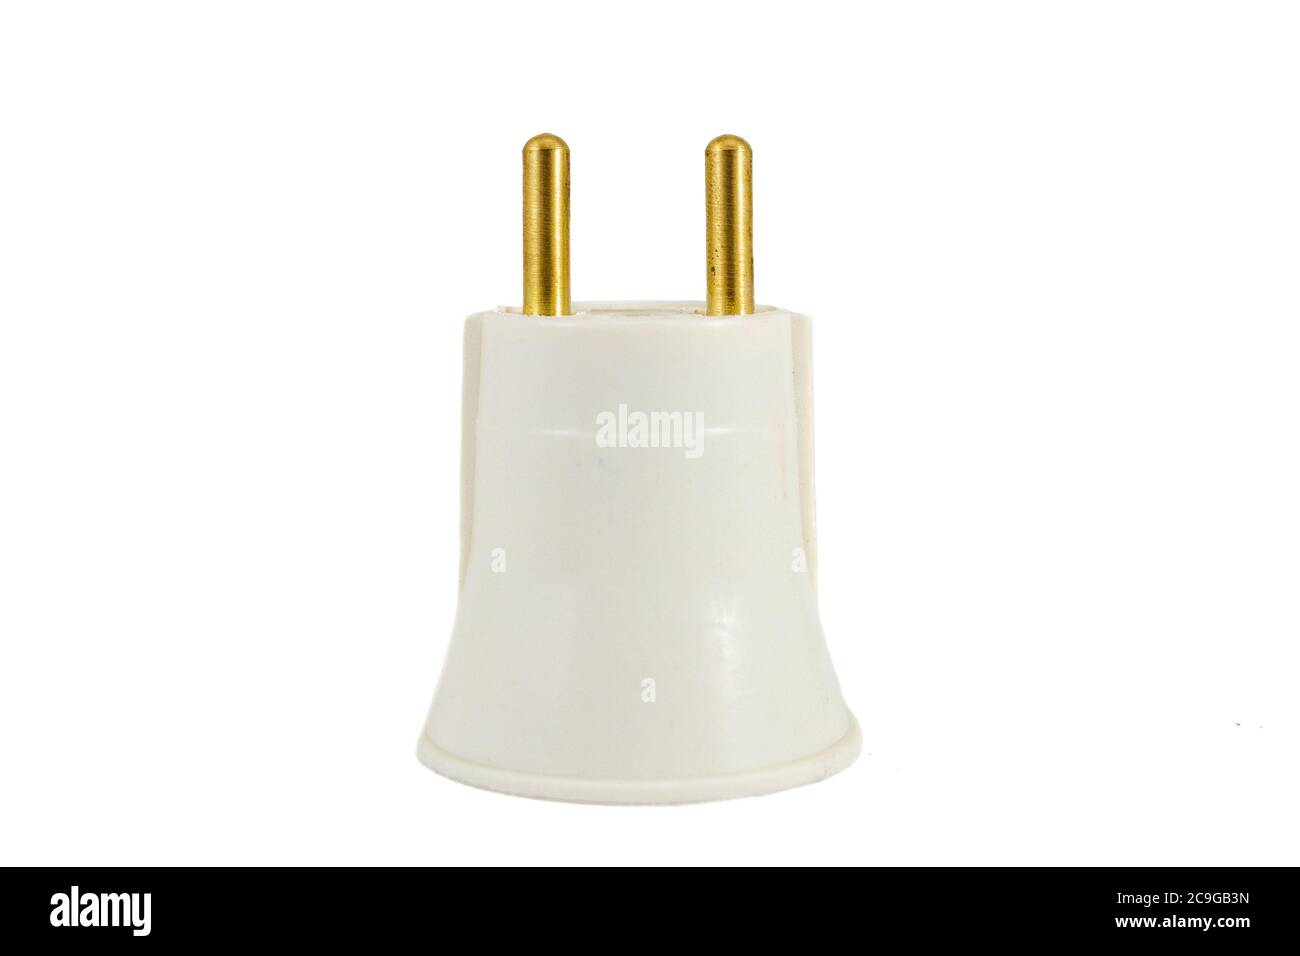 E27 Lampenfassung mit Glühlampenanschluss an Steckdose, isoliert auf weißem  Hintergrund Stockfotografie - Alamy